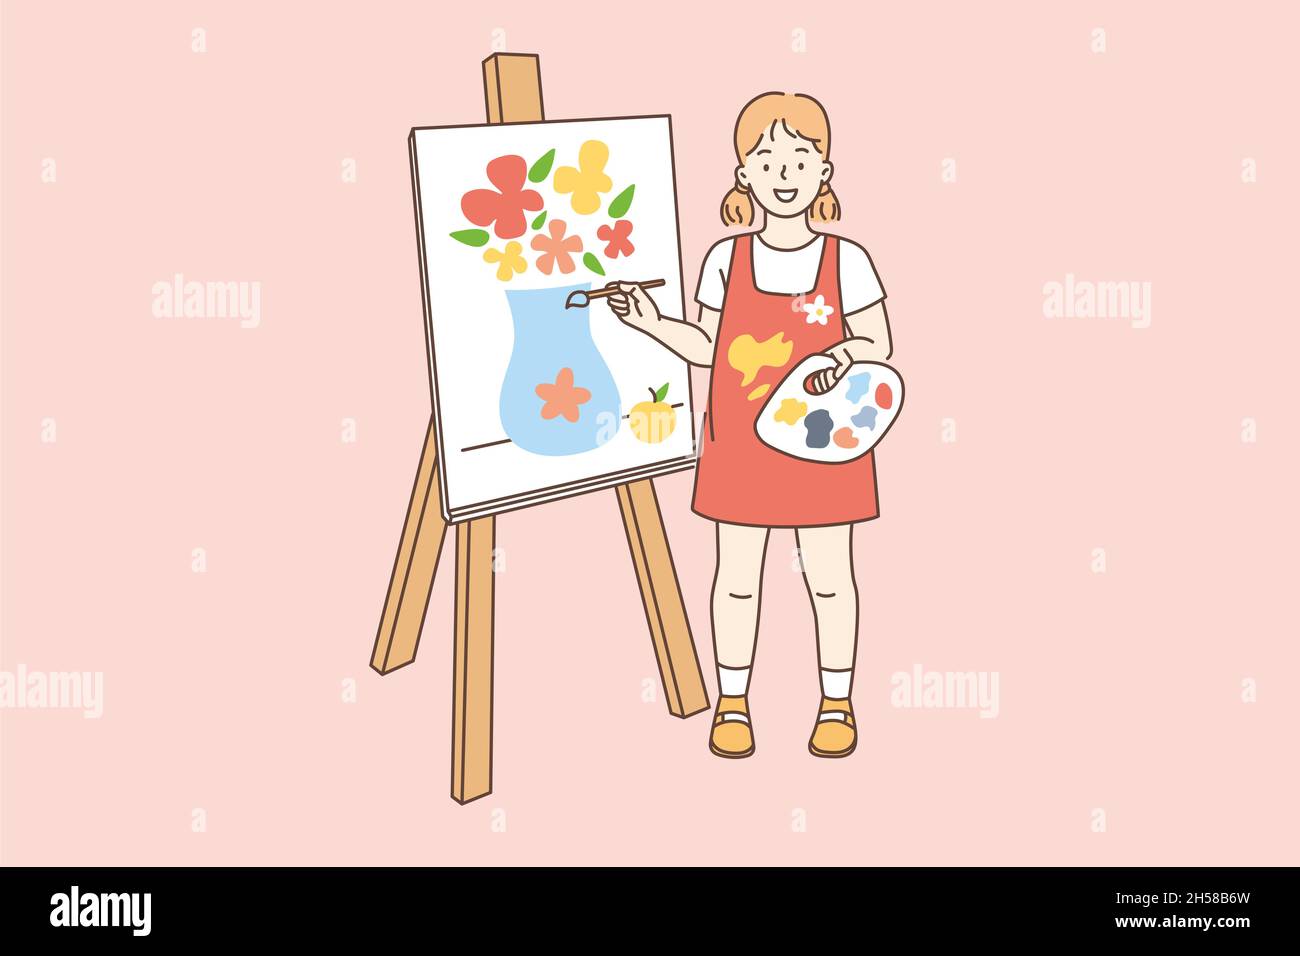 Zeichnen Malerei und Hobby-Konzept. Lächelndes Mädchen Cartoon-Figur steht  über Leinwand und Malerei Blumen in Vase mit Pinsel Vektor Illustration  Stock-Vektorgrafik - Alamy